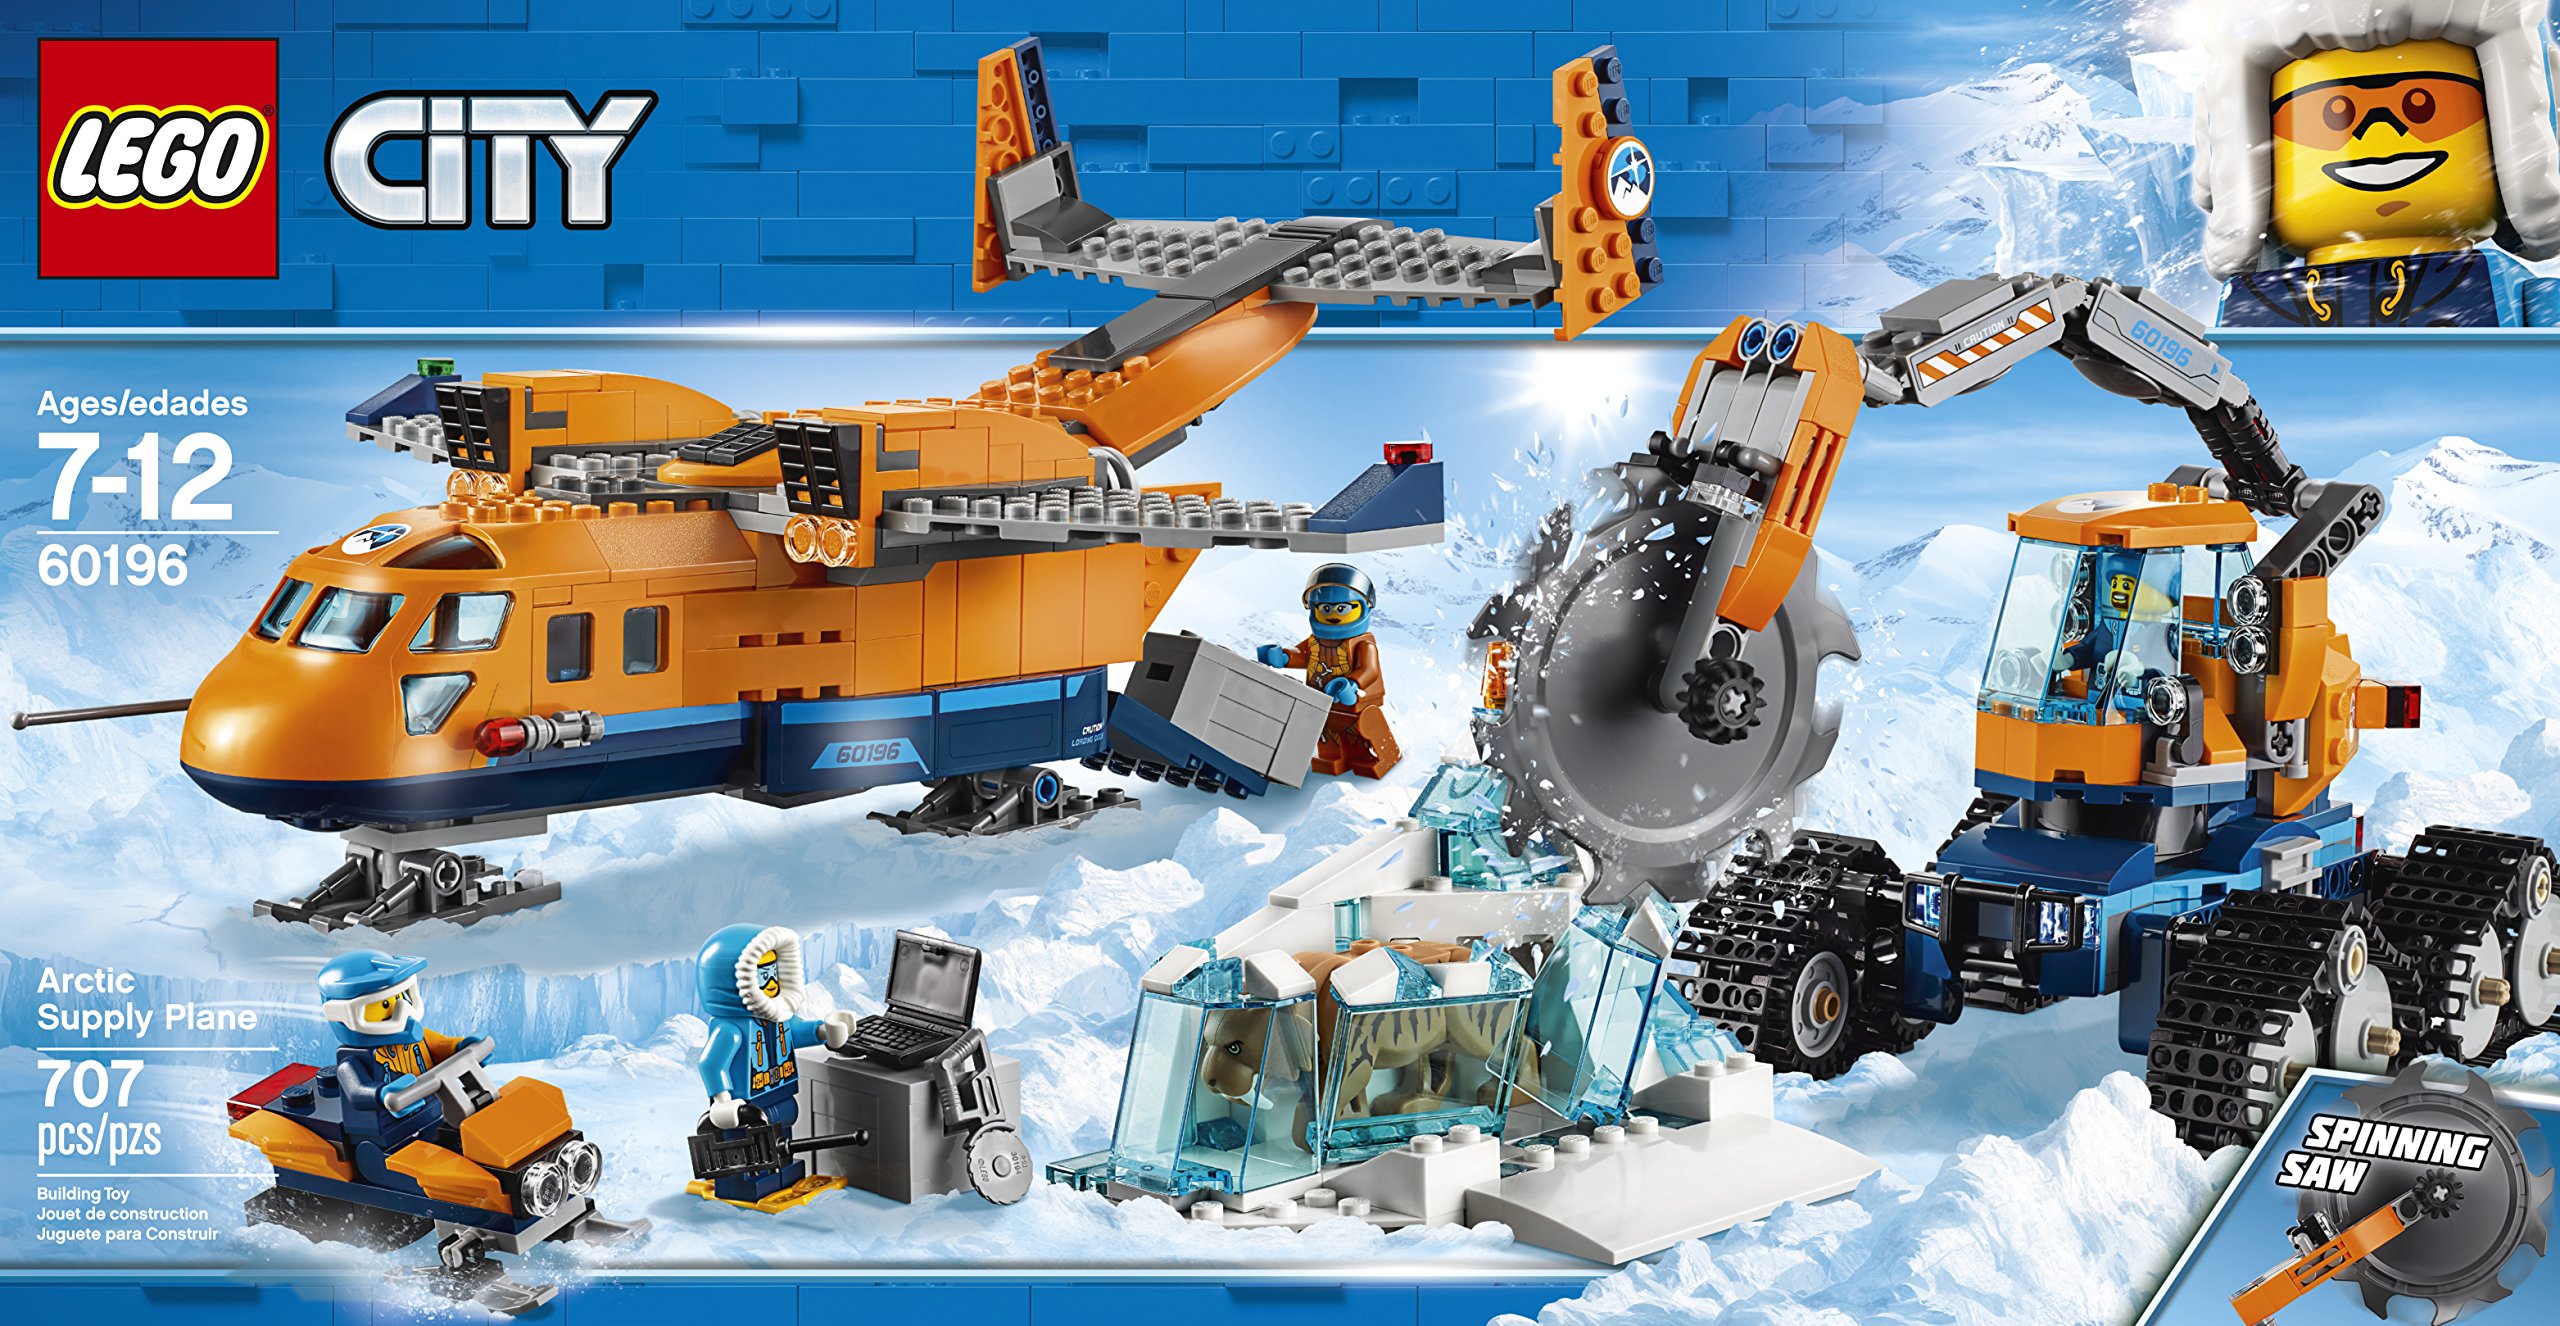 Lego City Arctic Supply Plane Toy